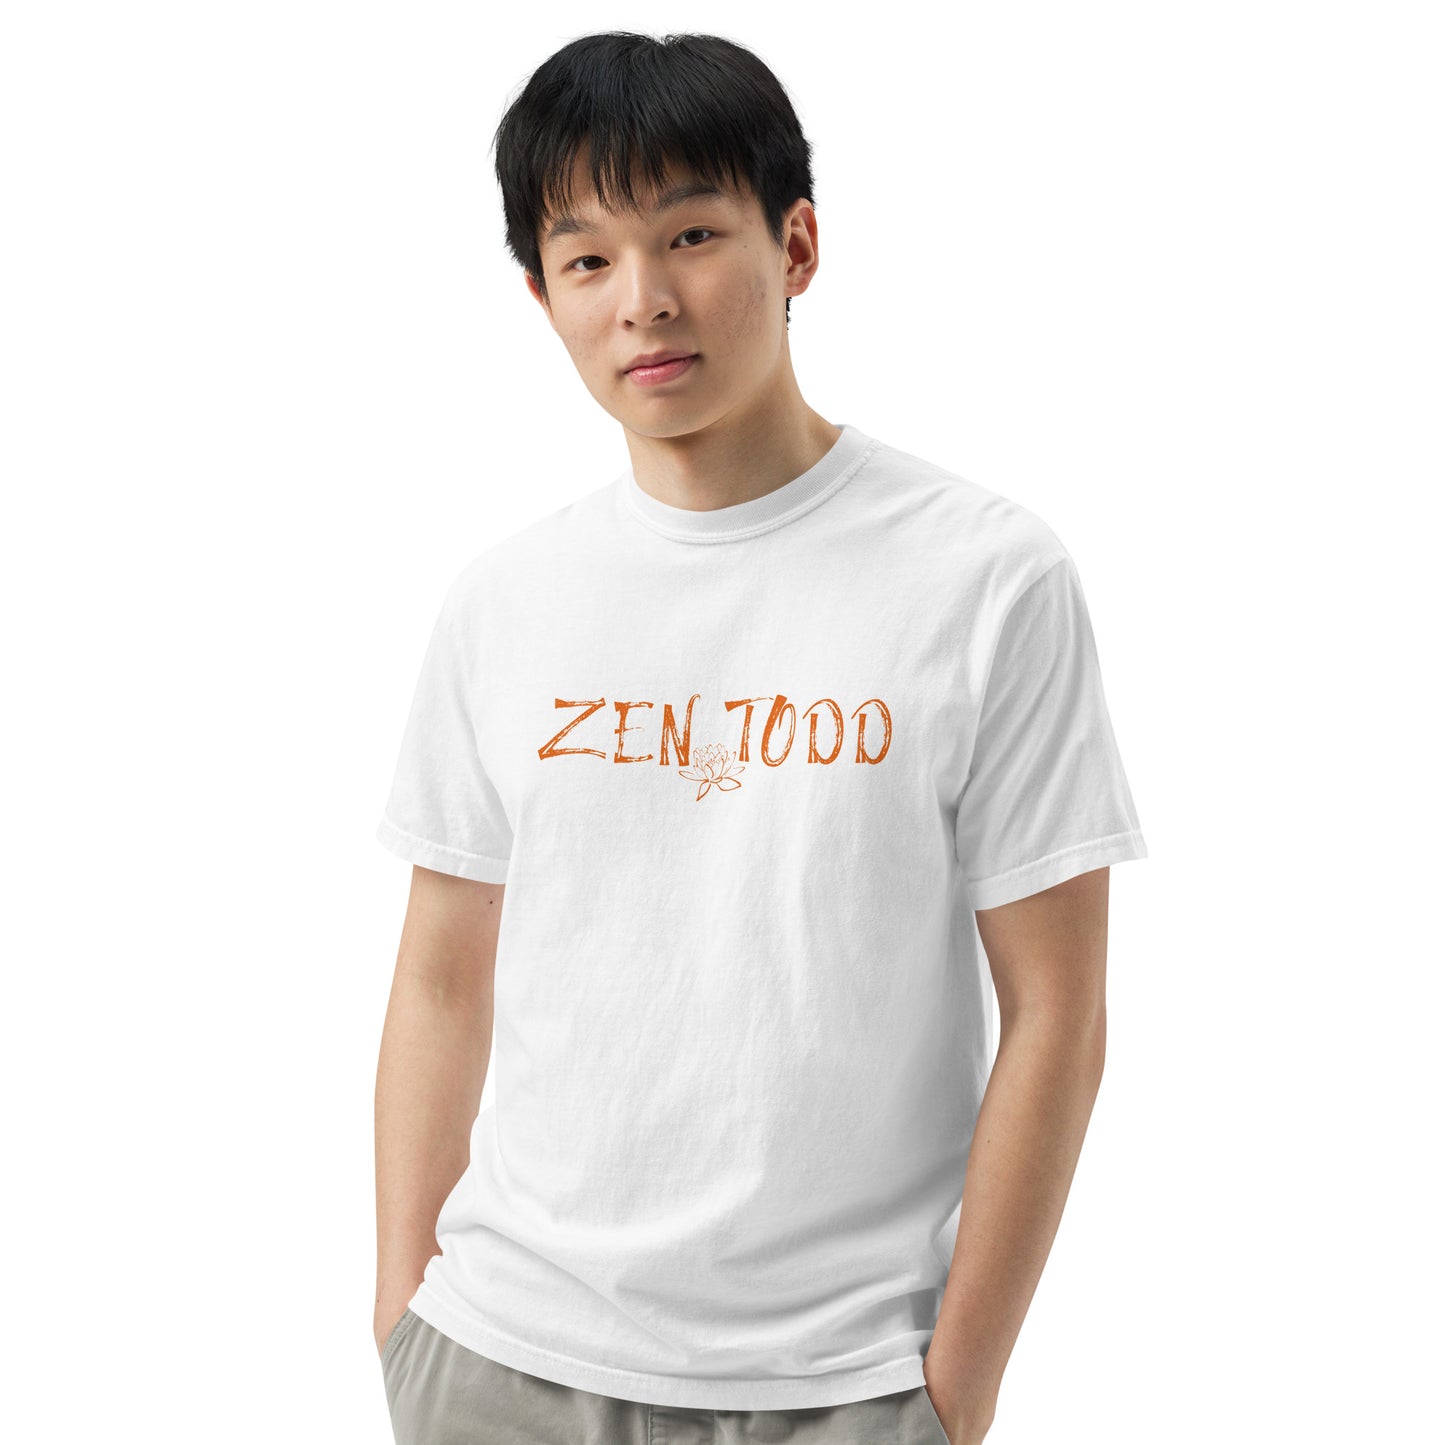 Zen Todd Men’s garment-dyed heavyweight t-shirt